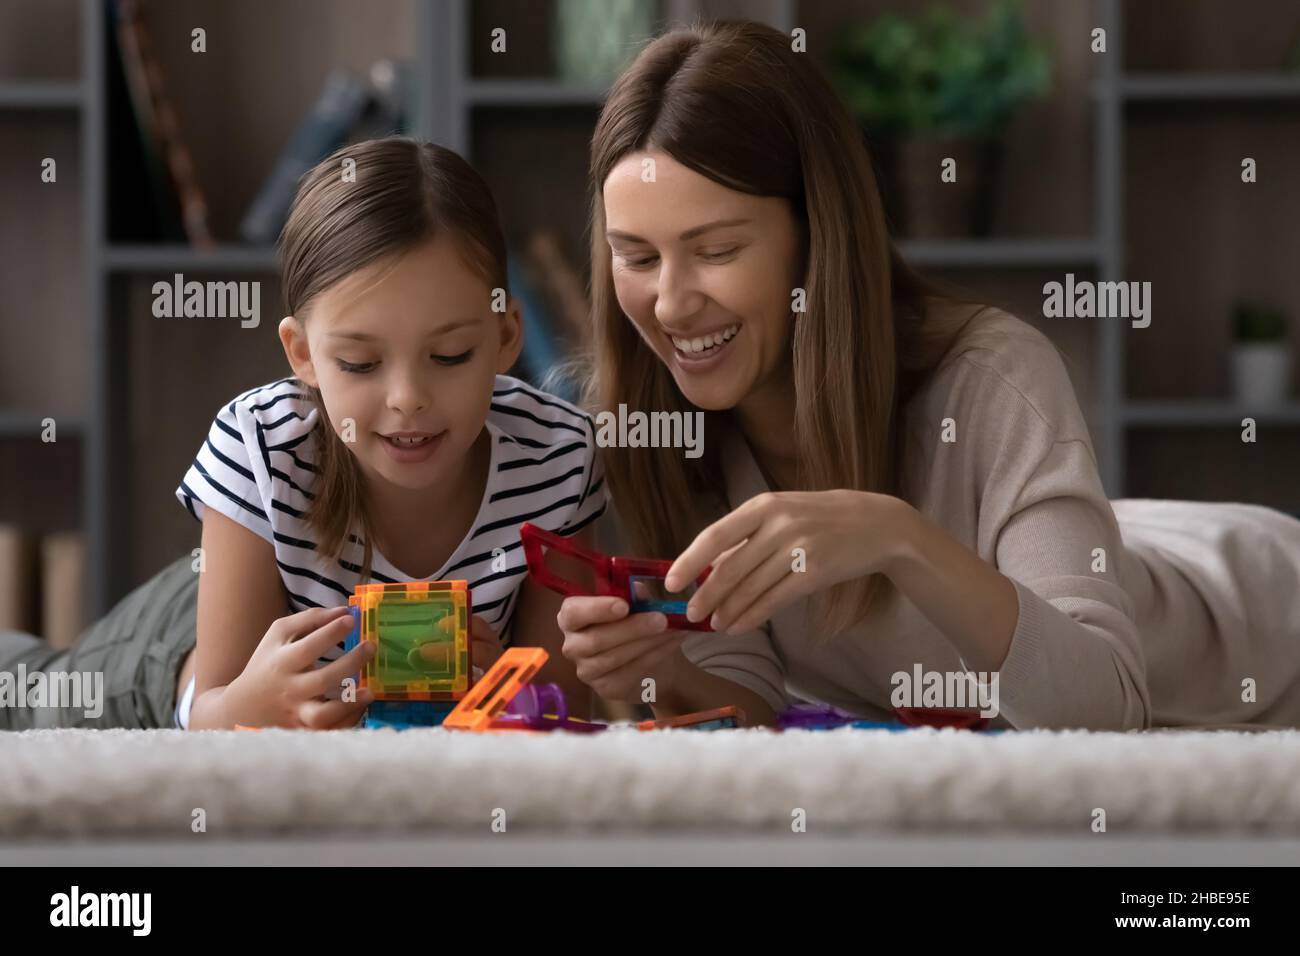 Junge weibliche Babysitterin und Kindermädchen spielen mit Konstruktor-Set Stockfoto